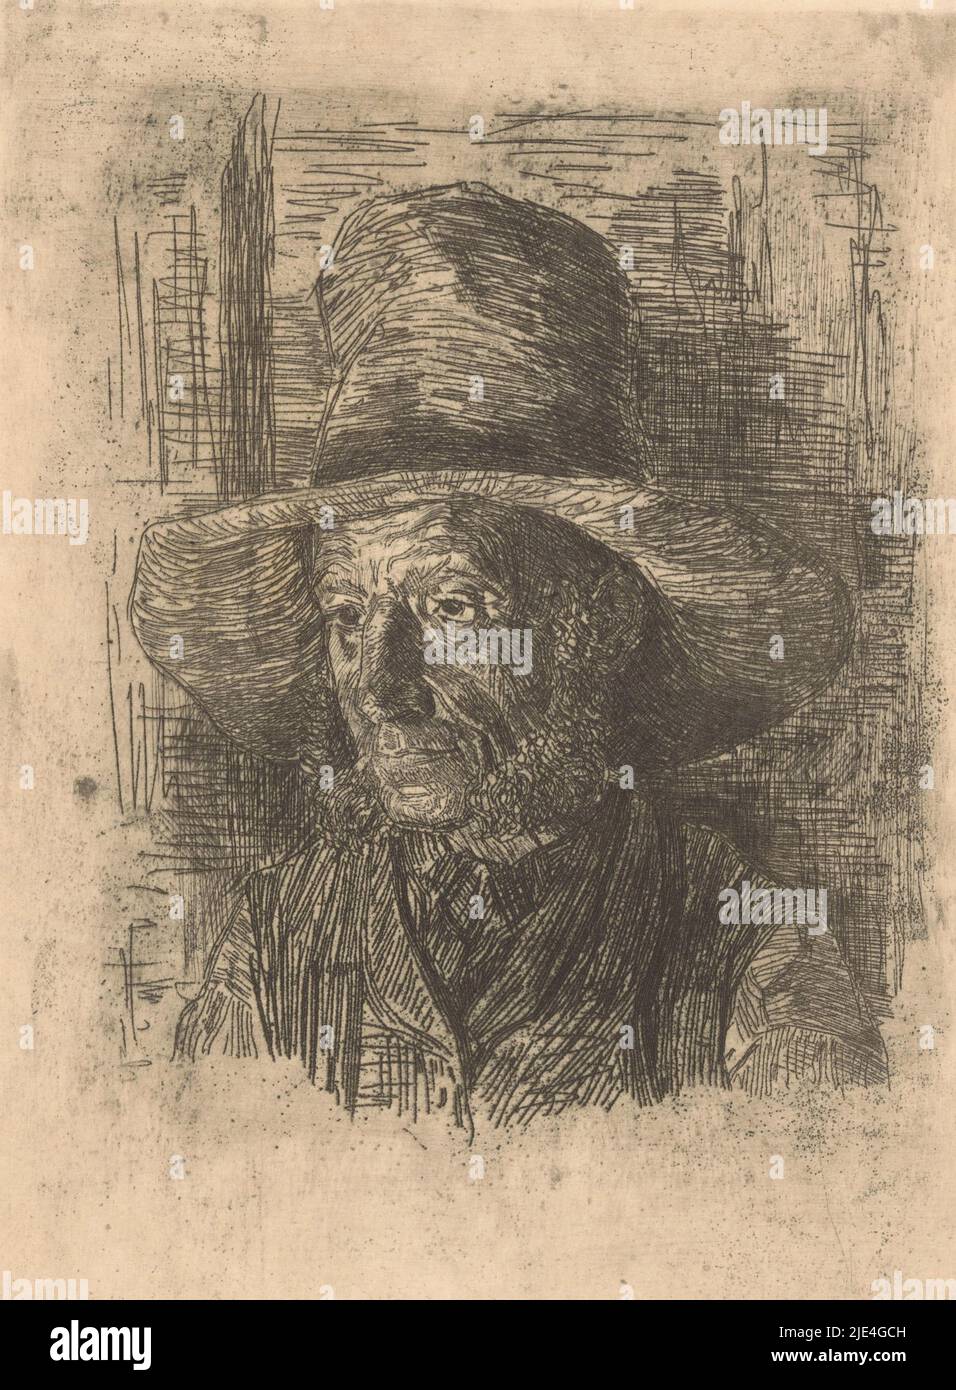 Portrait d'un homme inconnu, Martinus van Regteren Altena, 1876 - 1908, l'homme porte un chapeau et a des pattes., Imprimeur: Martinus van Regteren Altena, 1876 - 1908, papier, gravure, h 270 mm × l 173 mm Banque D'Images